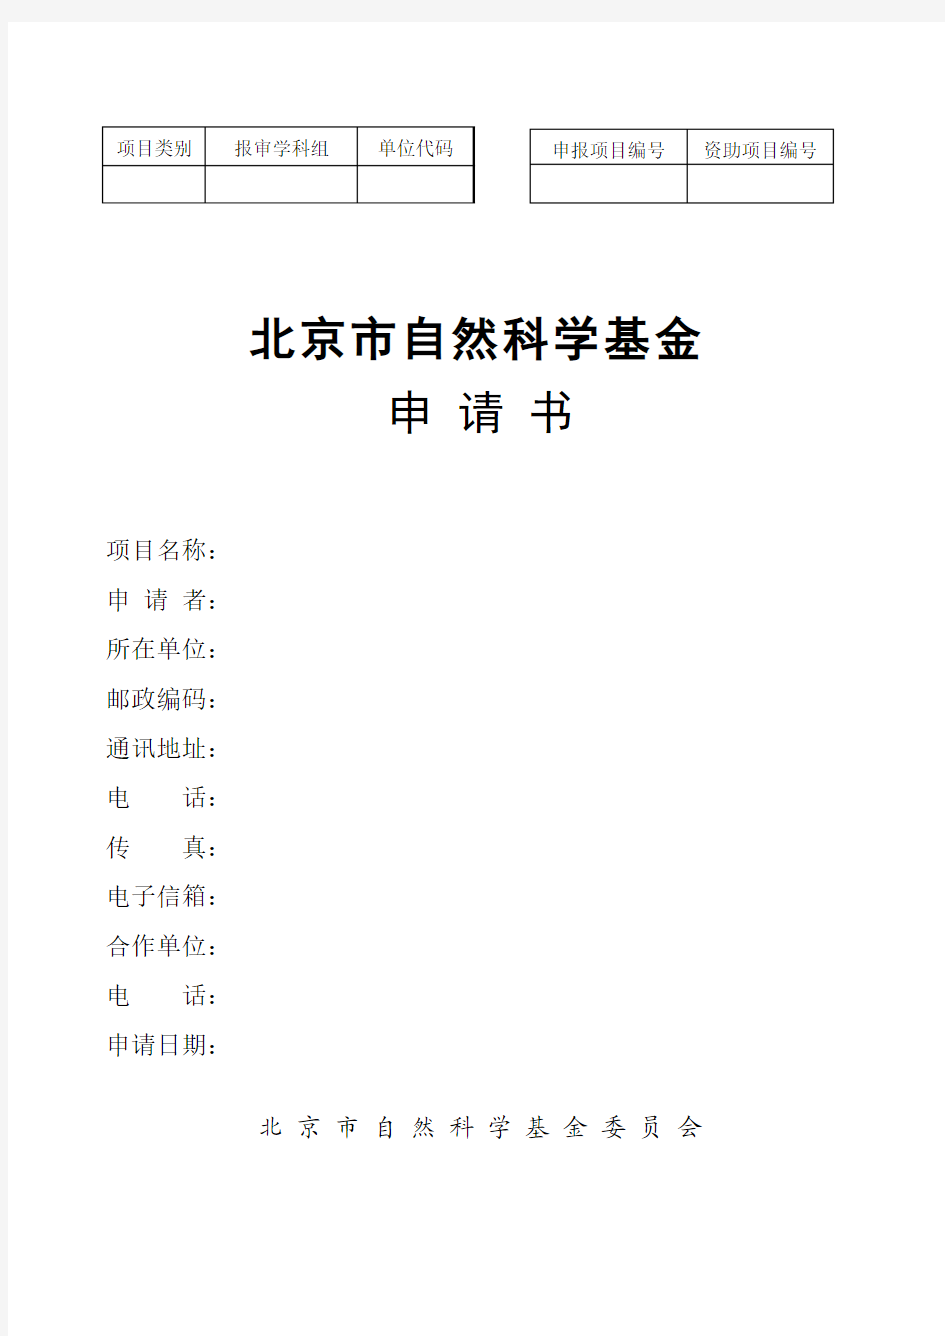 北京市自然科学基金申请书 - 申报项目编号